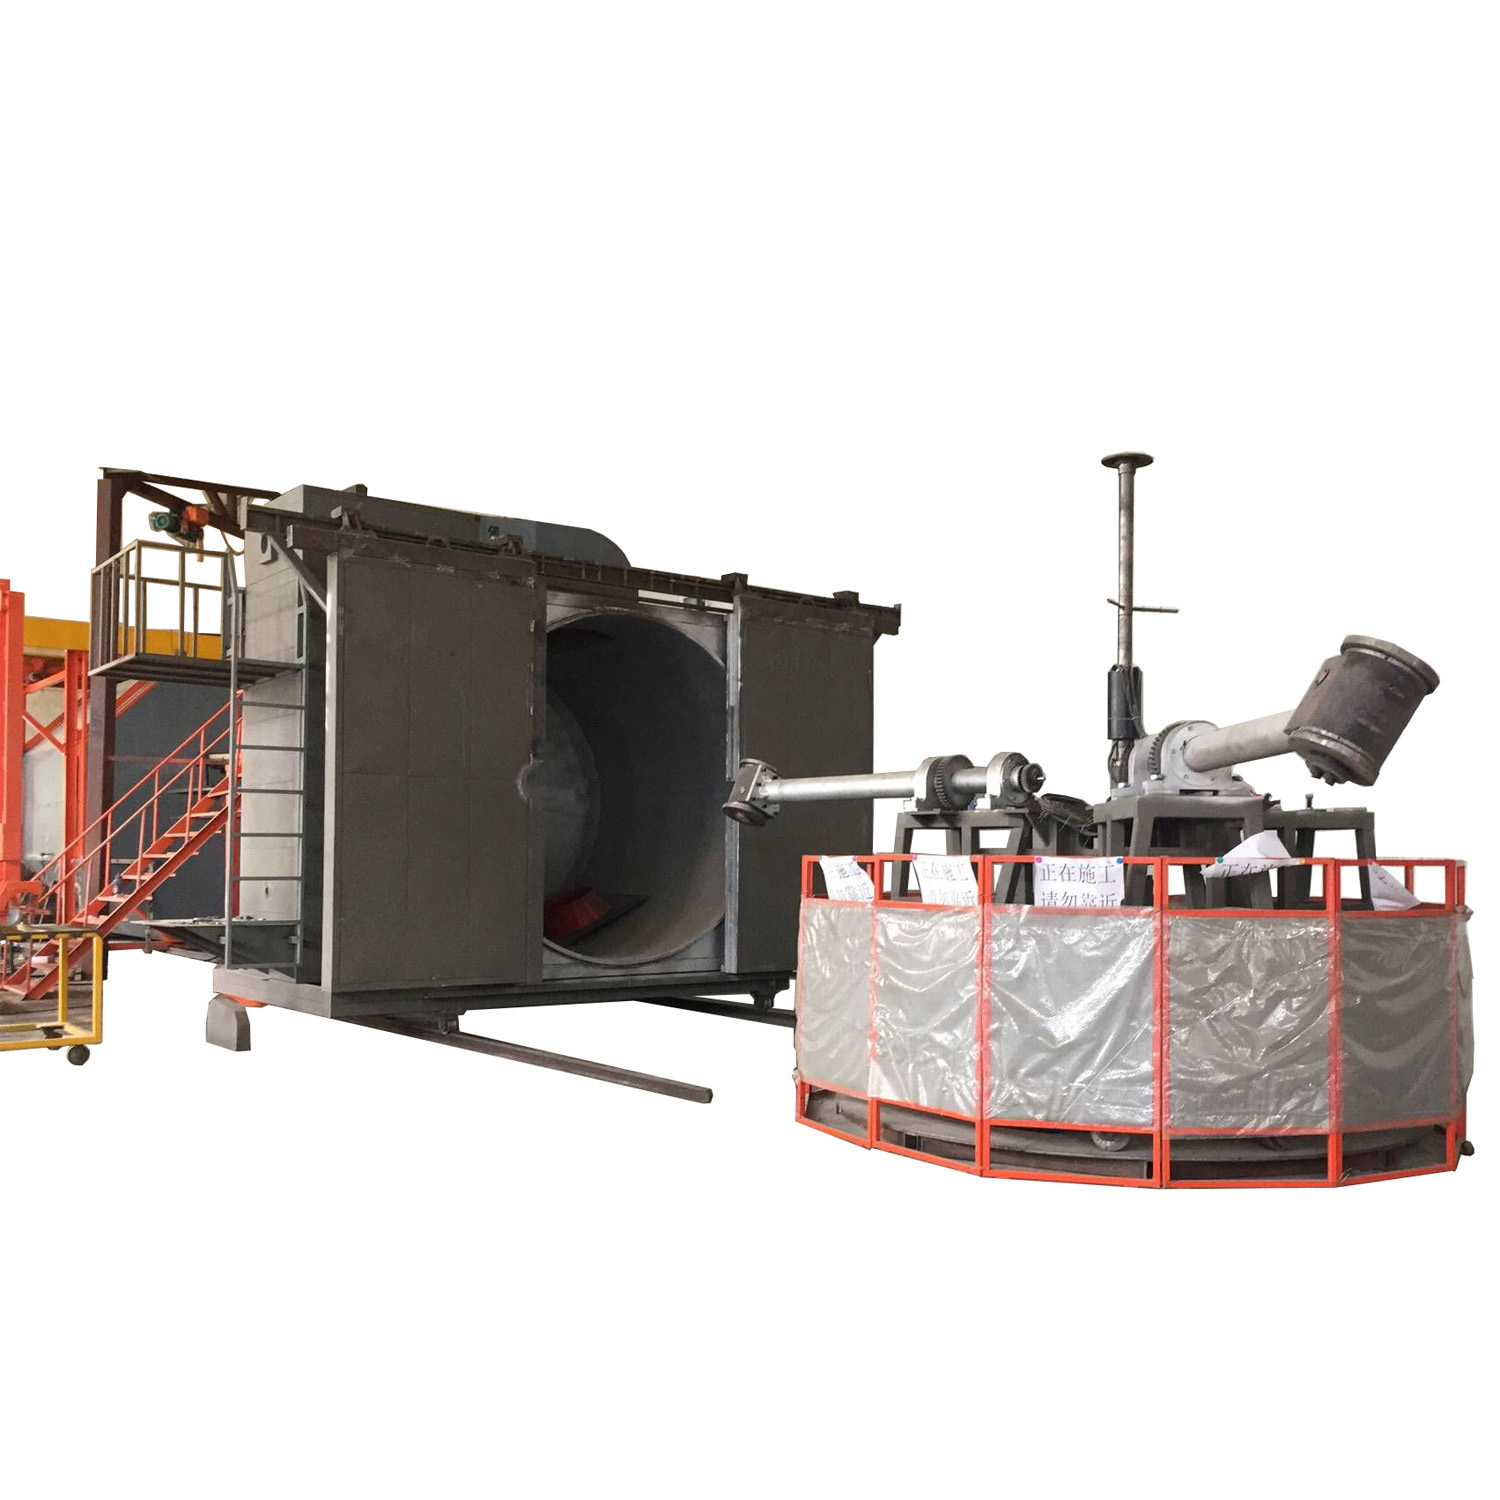 4 karú Carousel forgóformázó gép víztartályokhoz Kínában